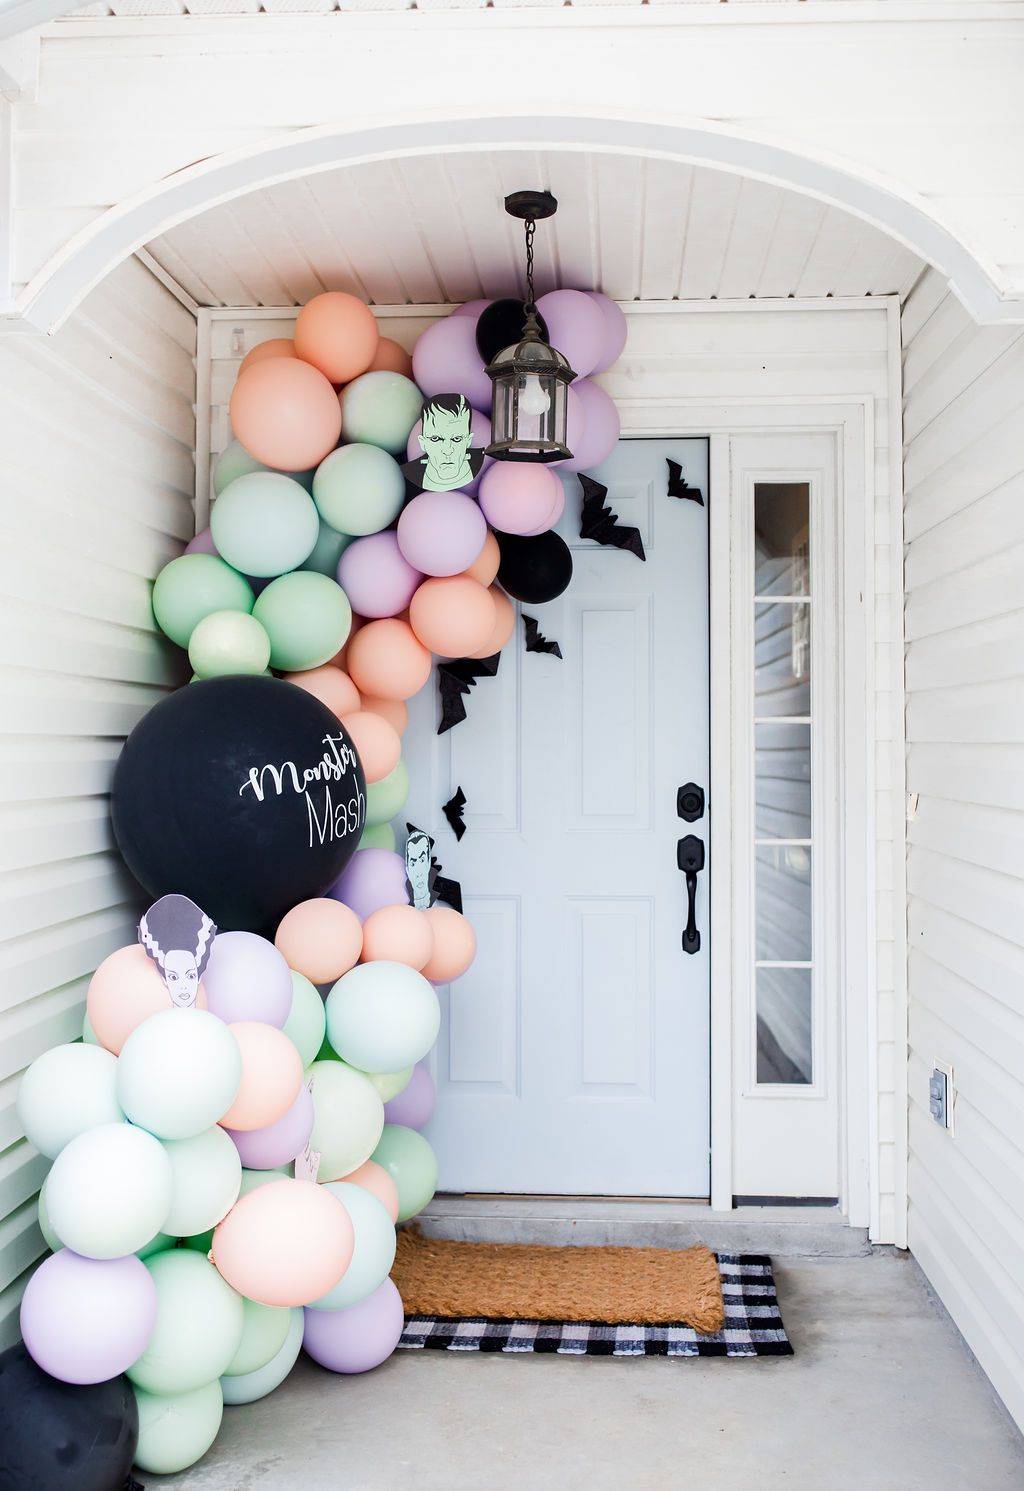 Rincón de globos en colores pastel como decoración de Halloween a la entrada